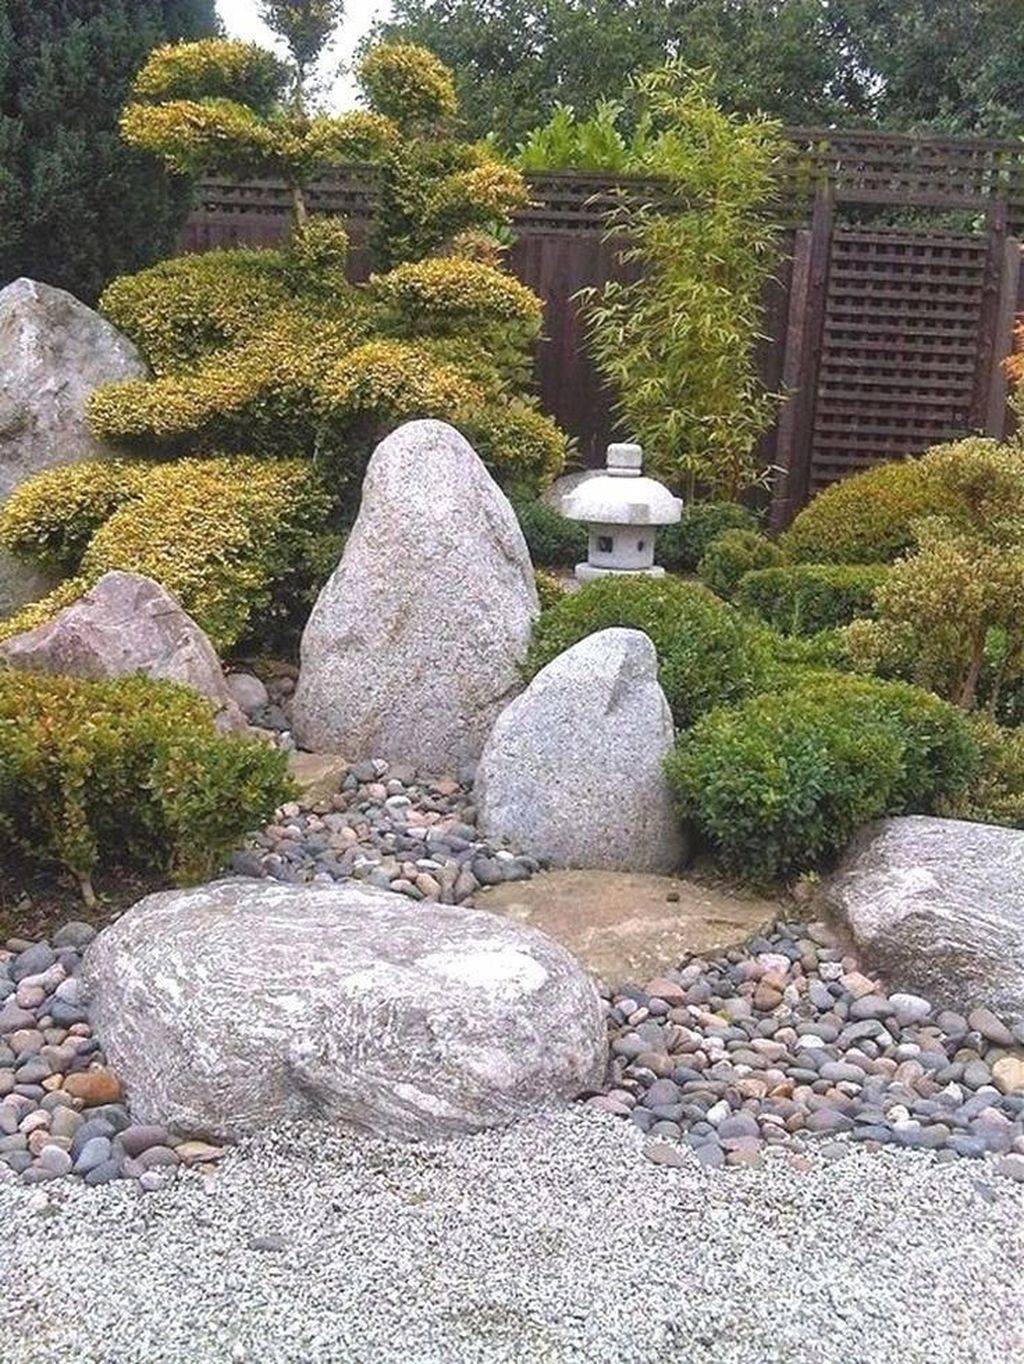 The Meditation Garden